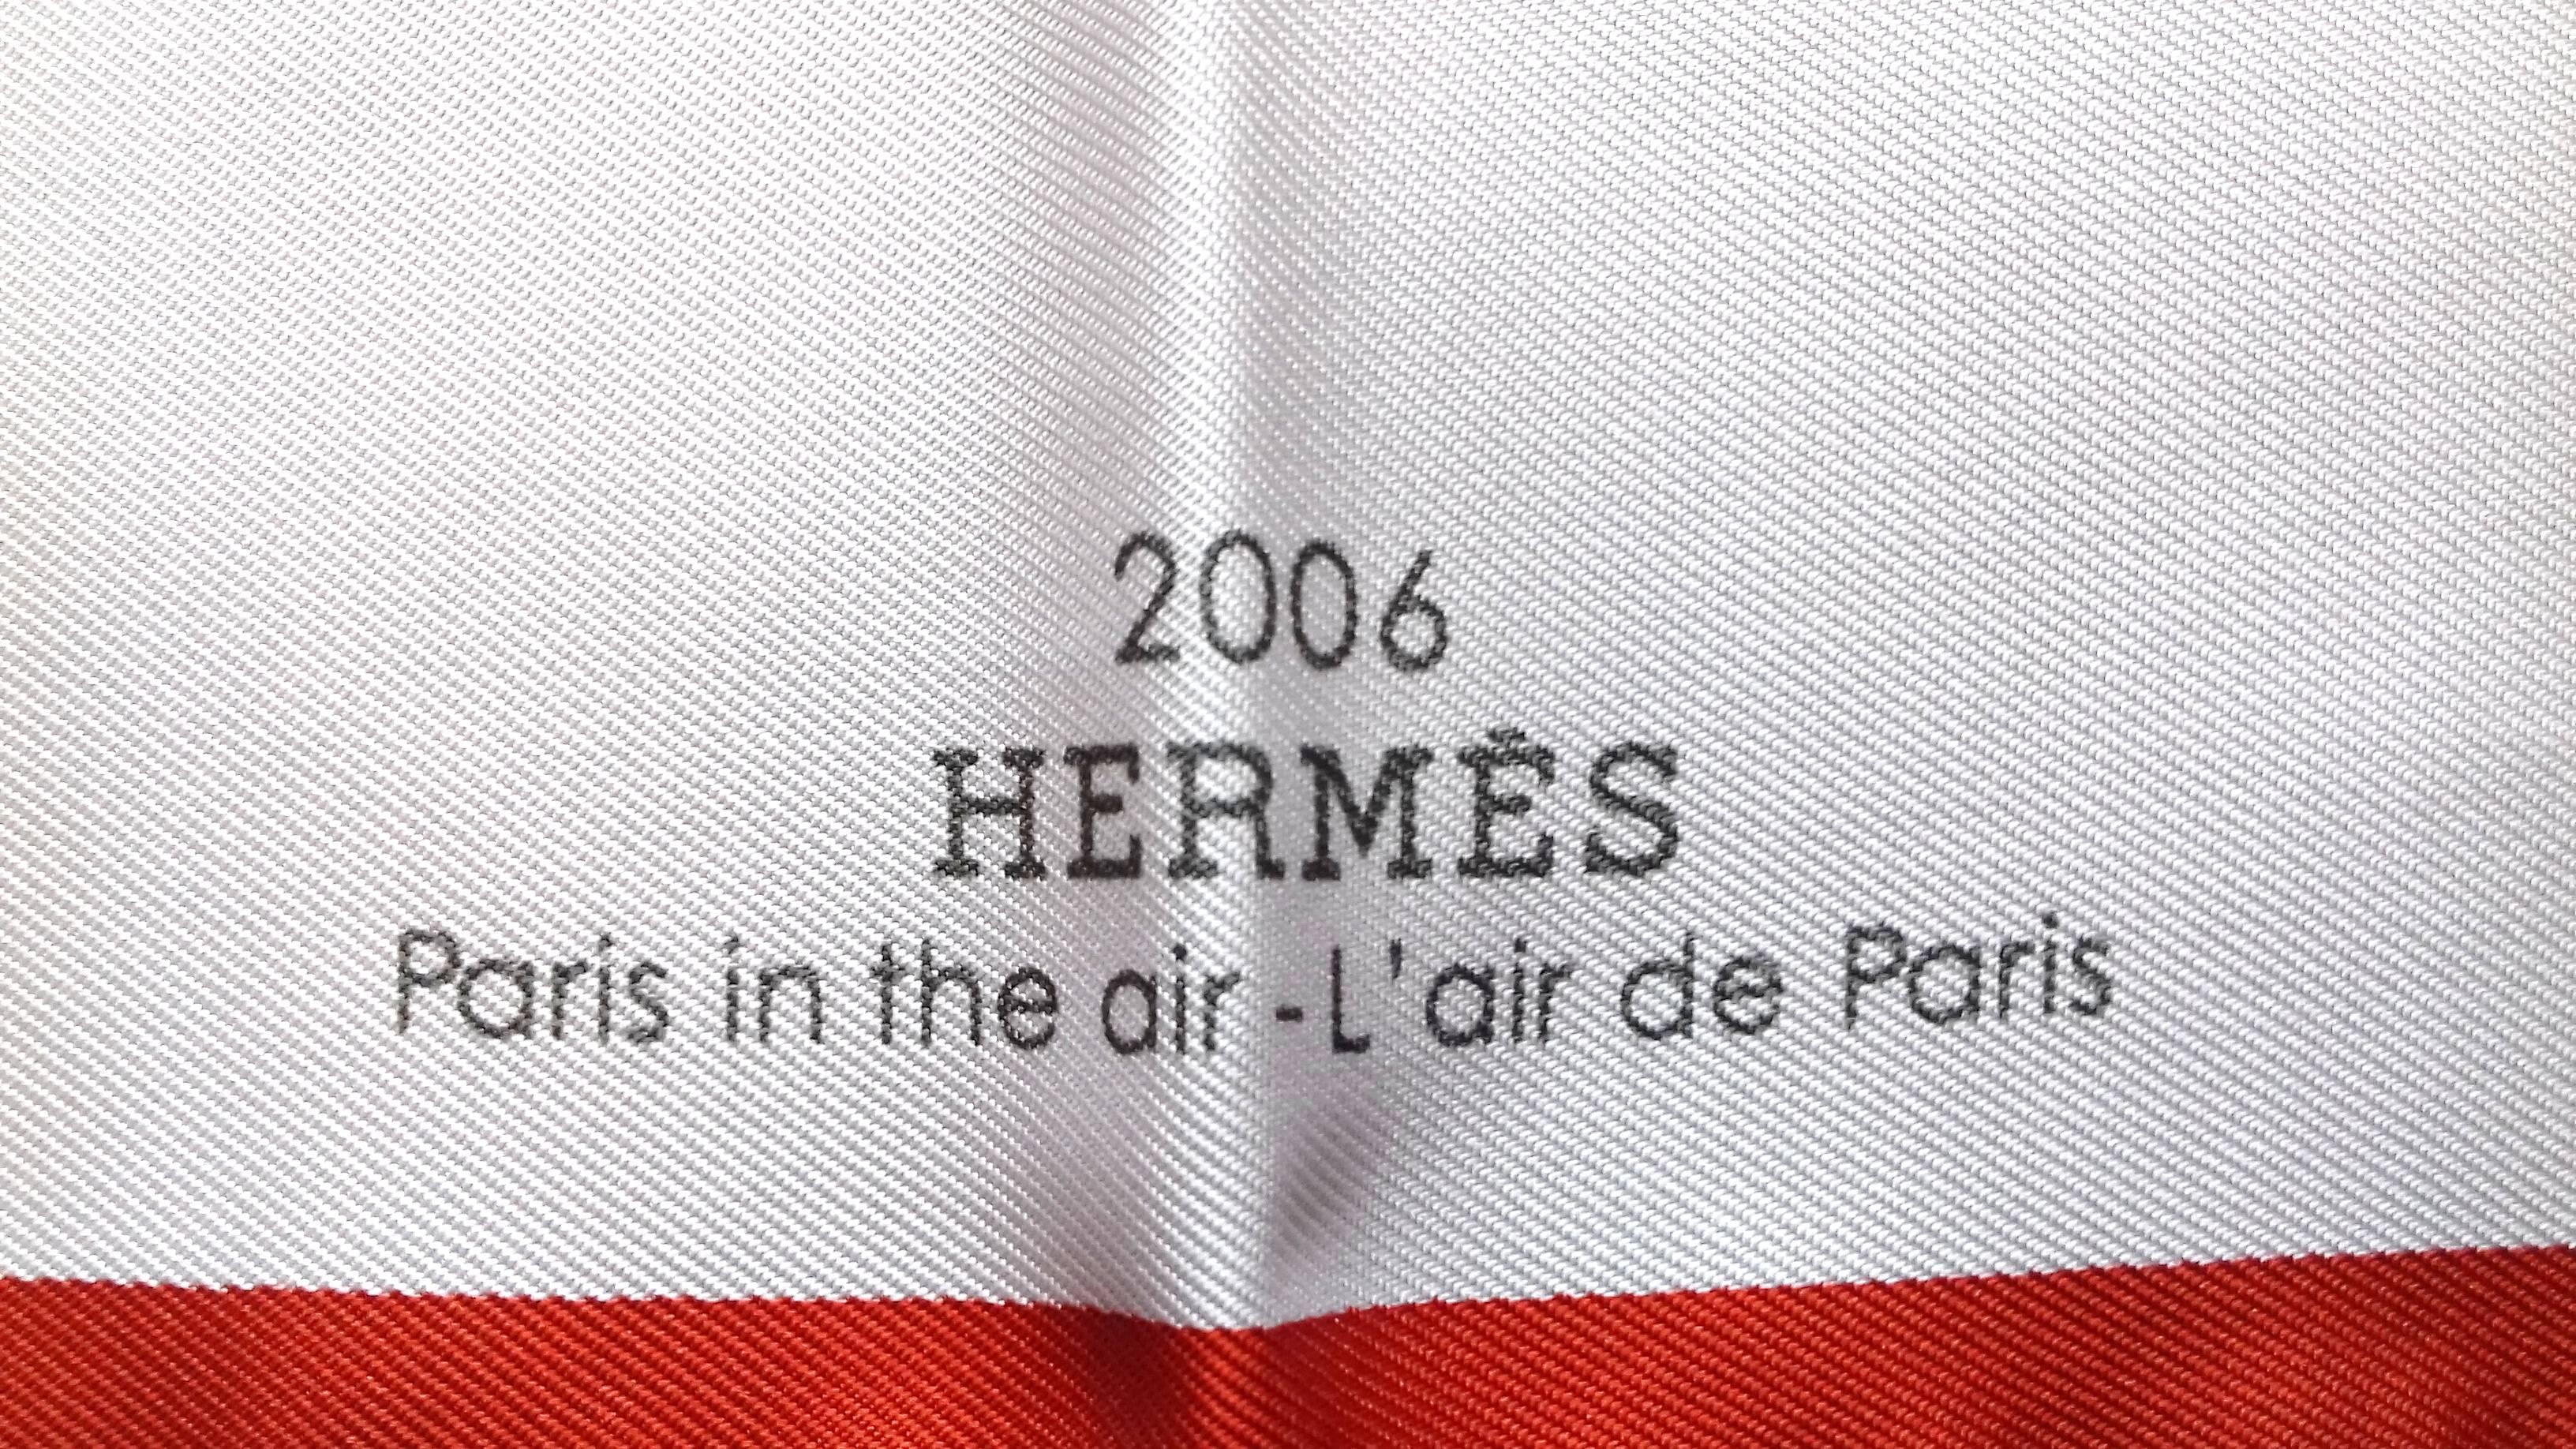 Hermès Gavroche Pocket Square Air de Paris Paris in the Air Scarf 2006 Collector 7